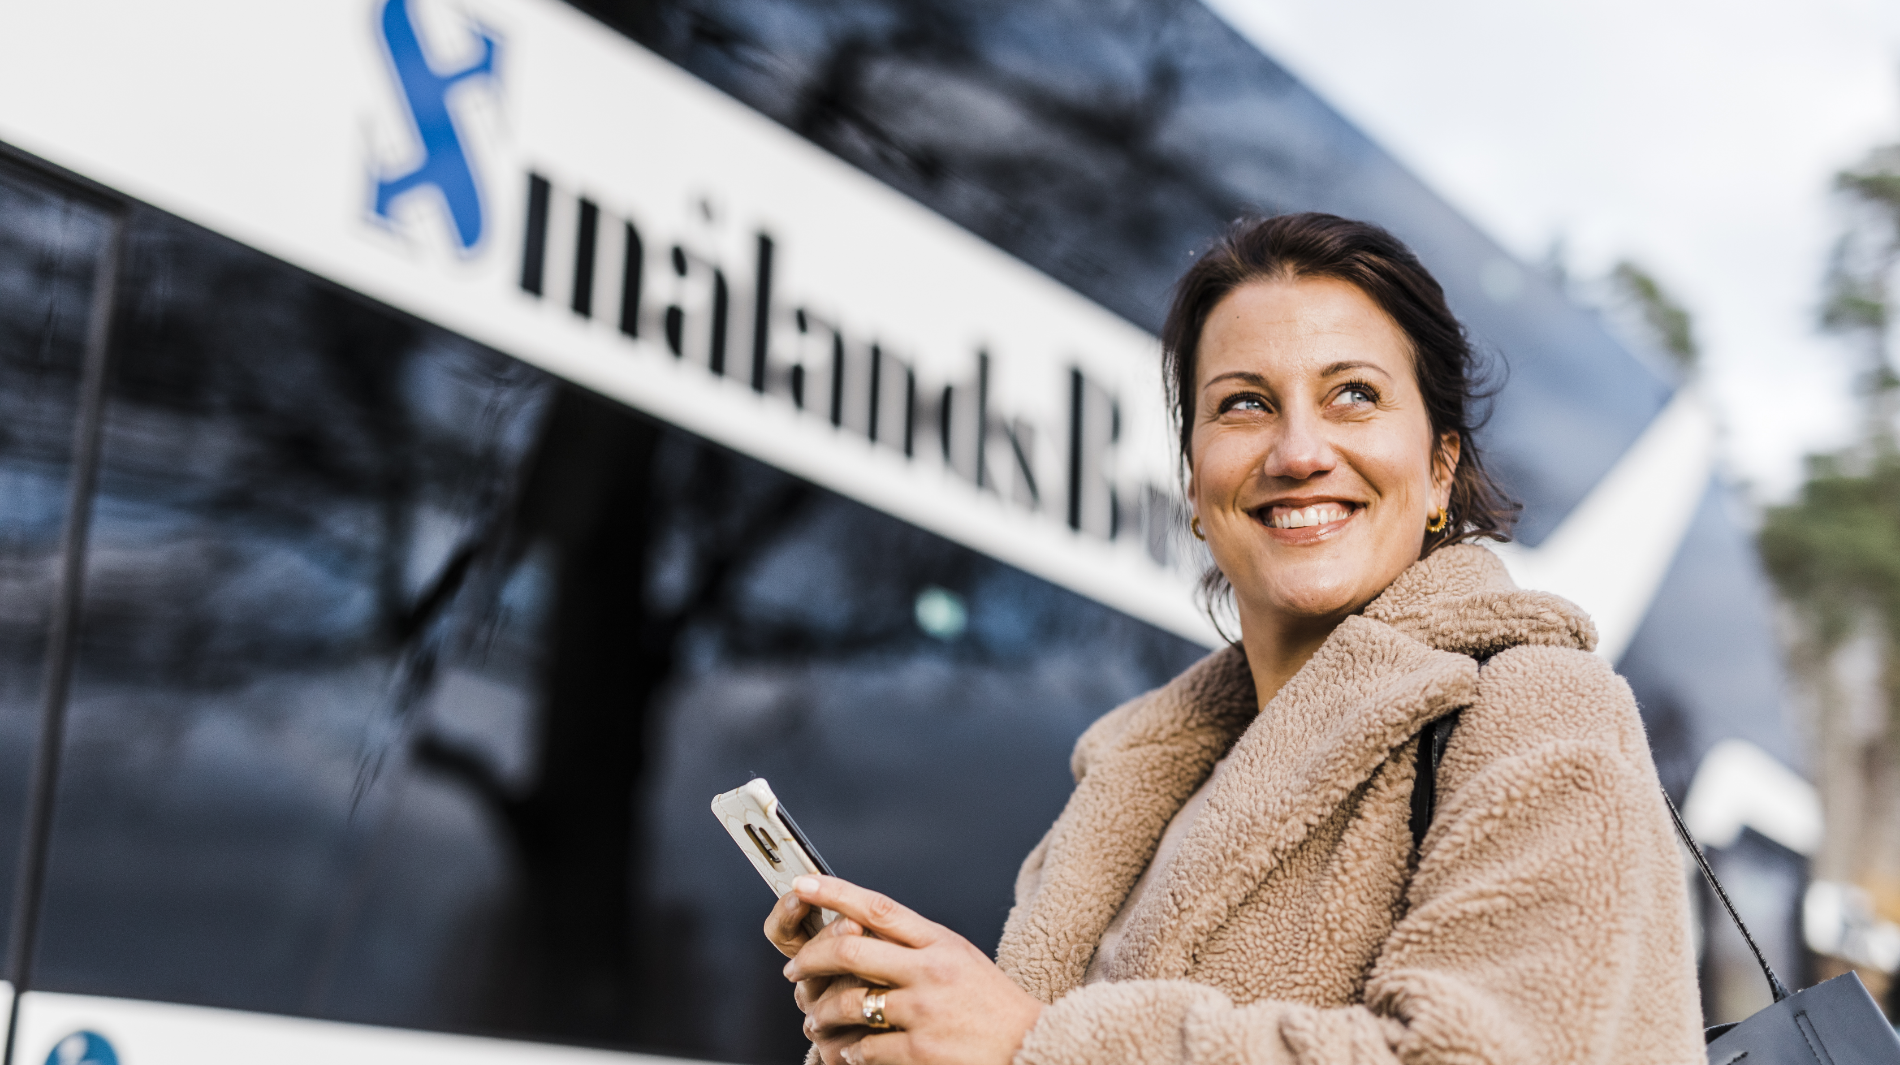 Kvinna skrattar framför Smålandsbussen